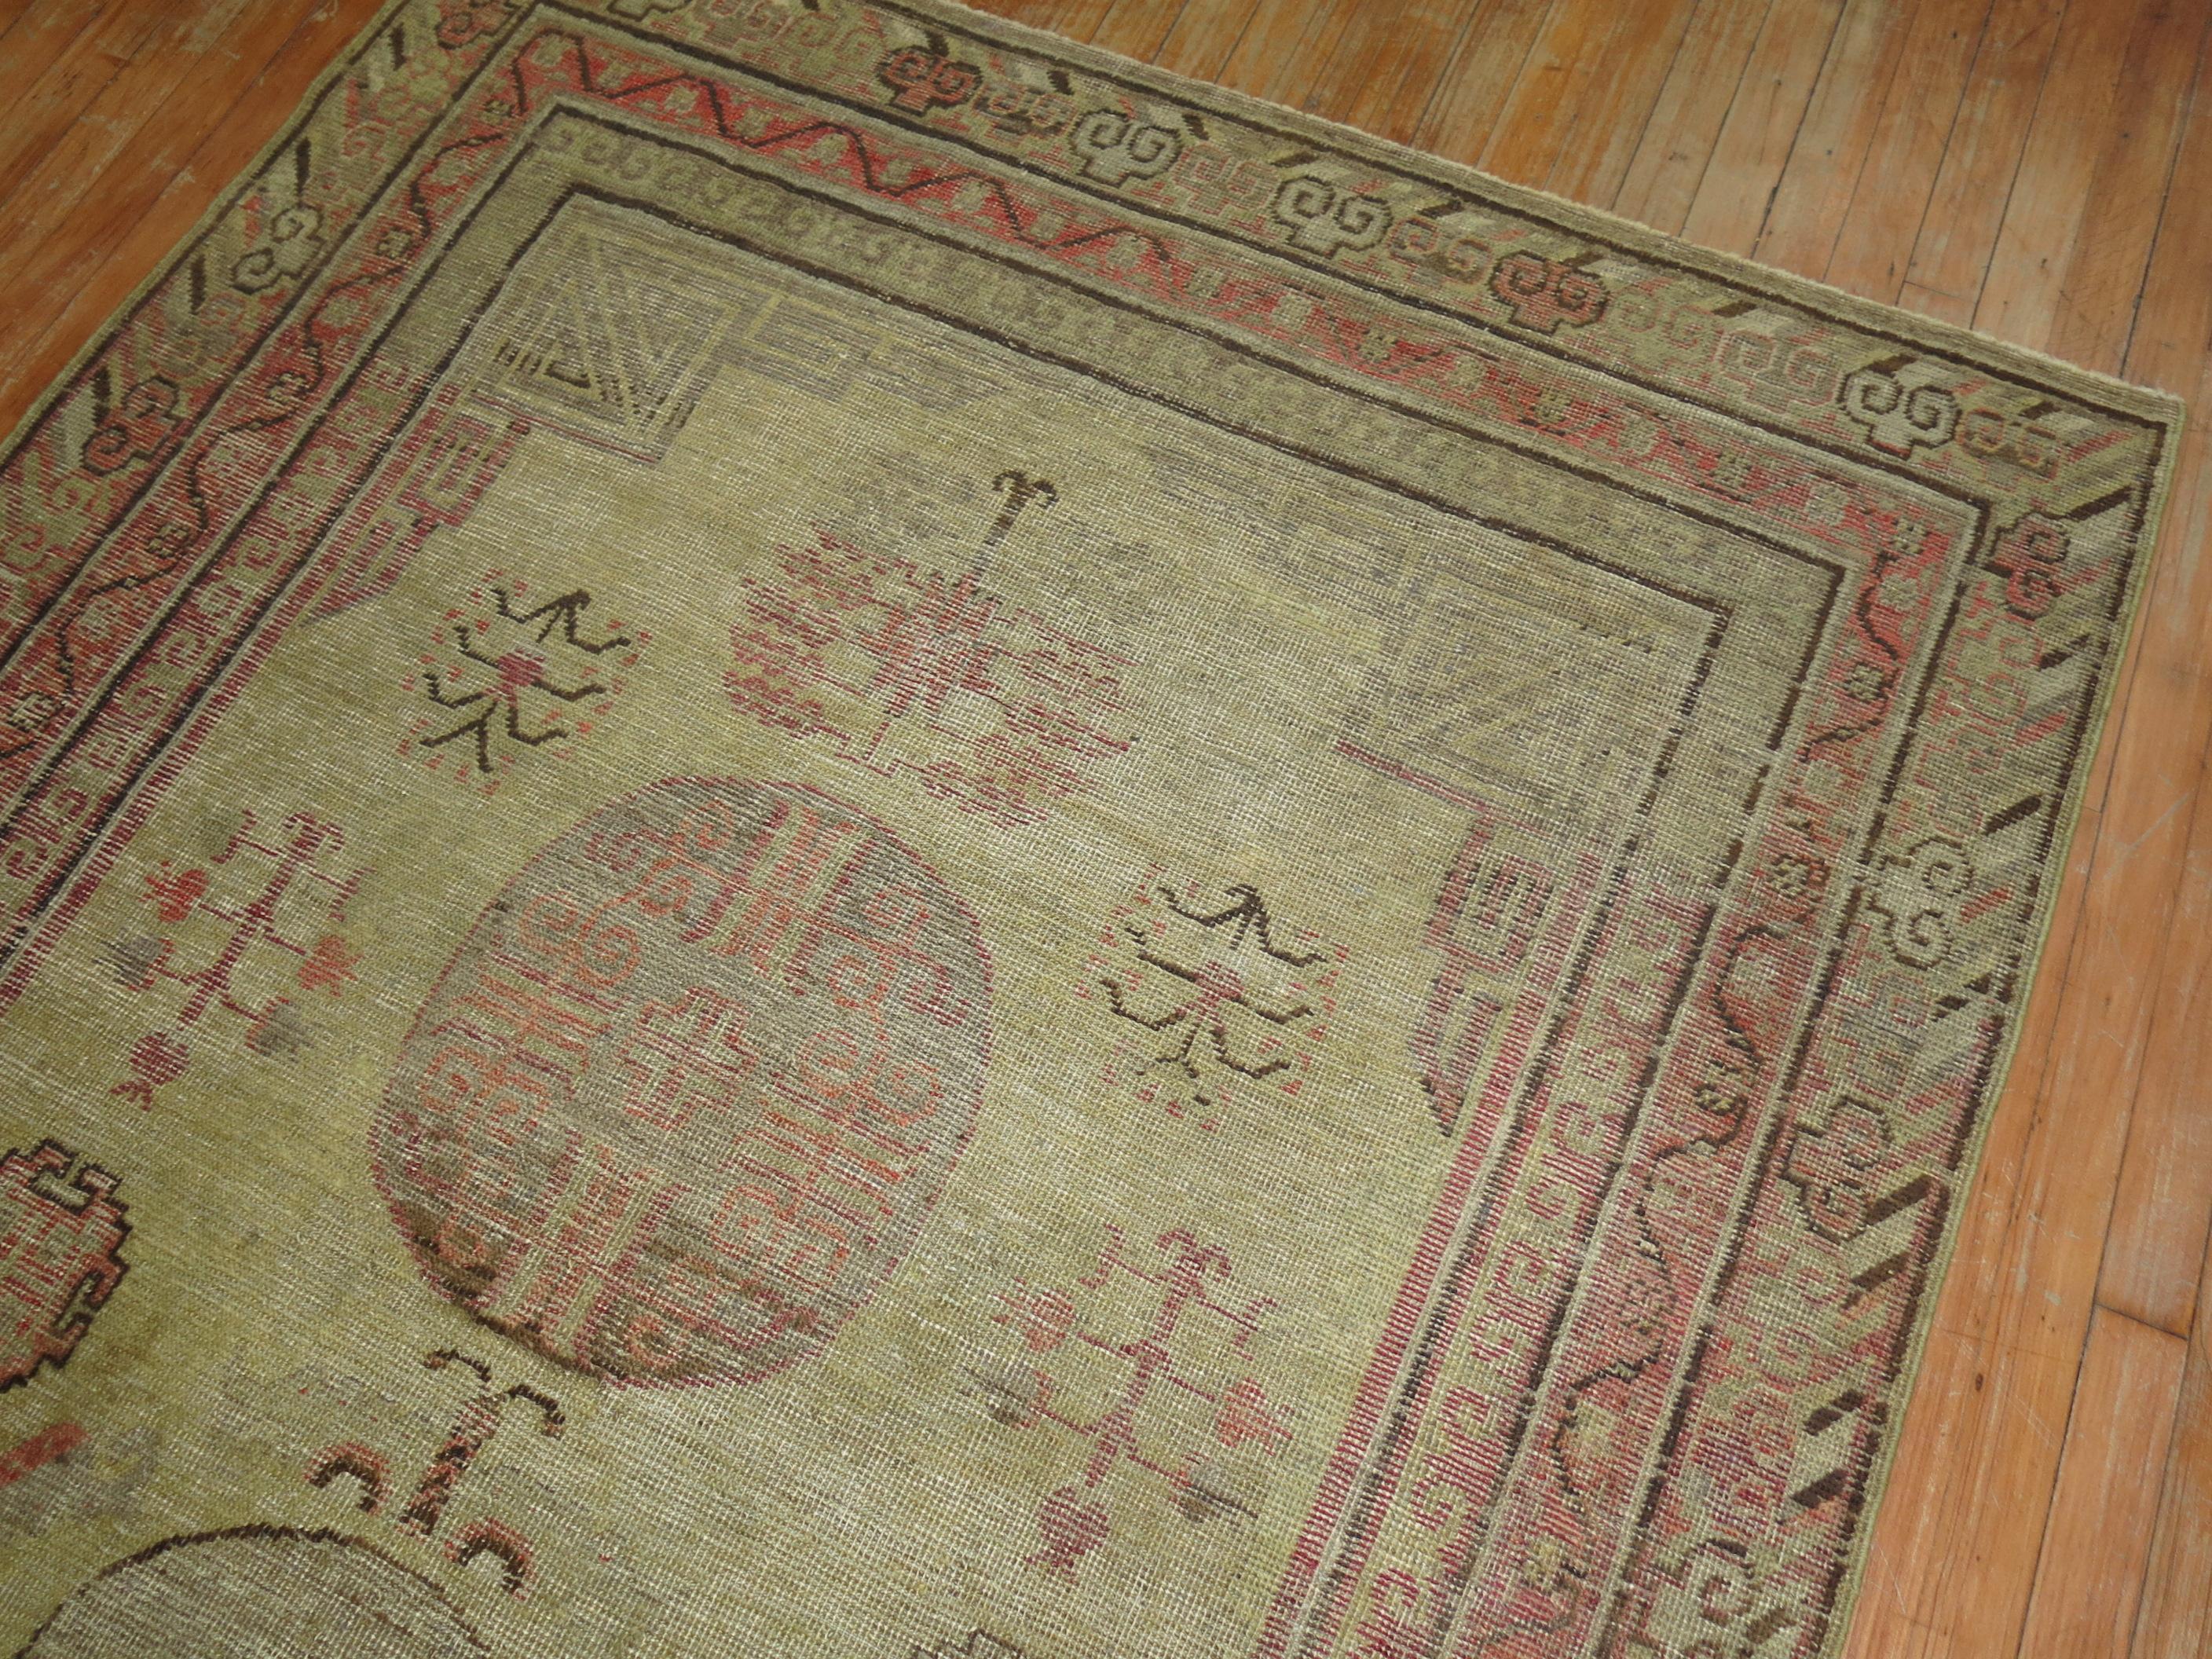 Tapis gkhotan de la fin du 19ème siècle.

Mesures : 5' x 9'3''

Produisant des tapis depuis le 17e siècle, avec un pic de production aux 18e et 19e siècles, les tapis de Khotan se caractérisent par des motifs géométriques avec des dessins